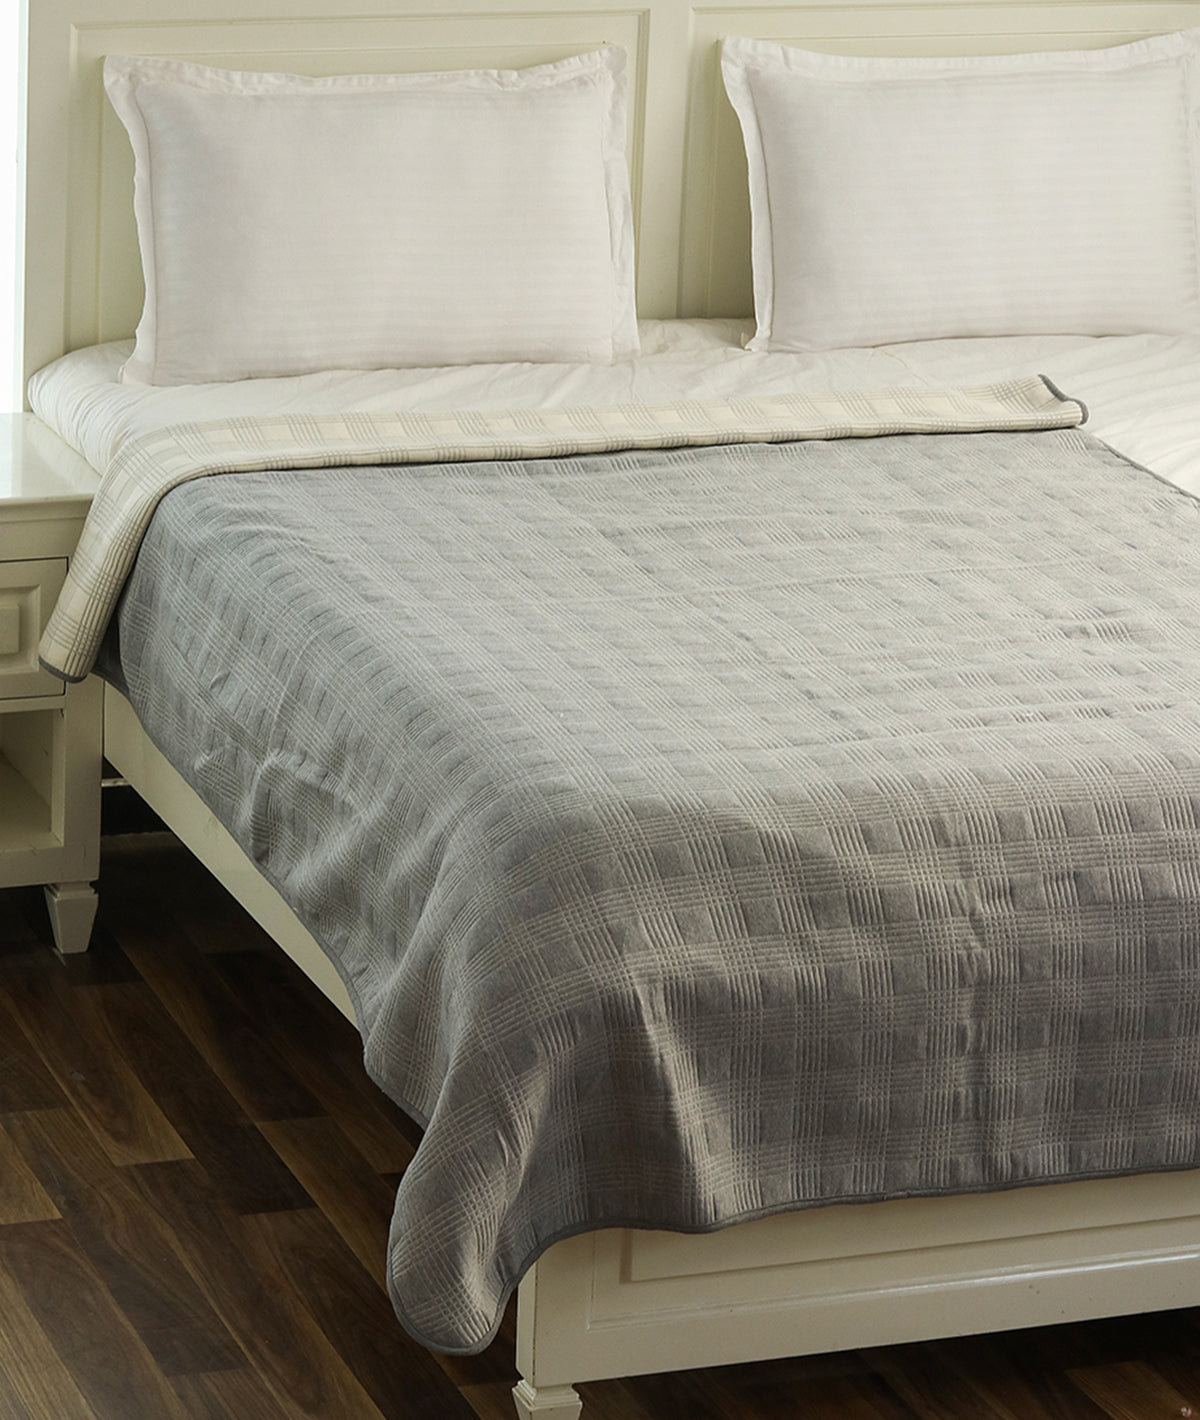 Tartan Check Cotton Knitted Single Bed Dohar / Quilt (Light Grey Melange & Natural)